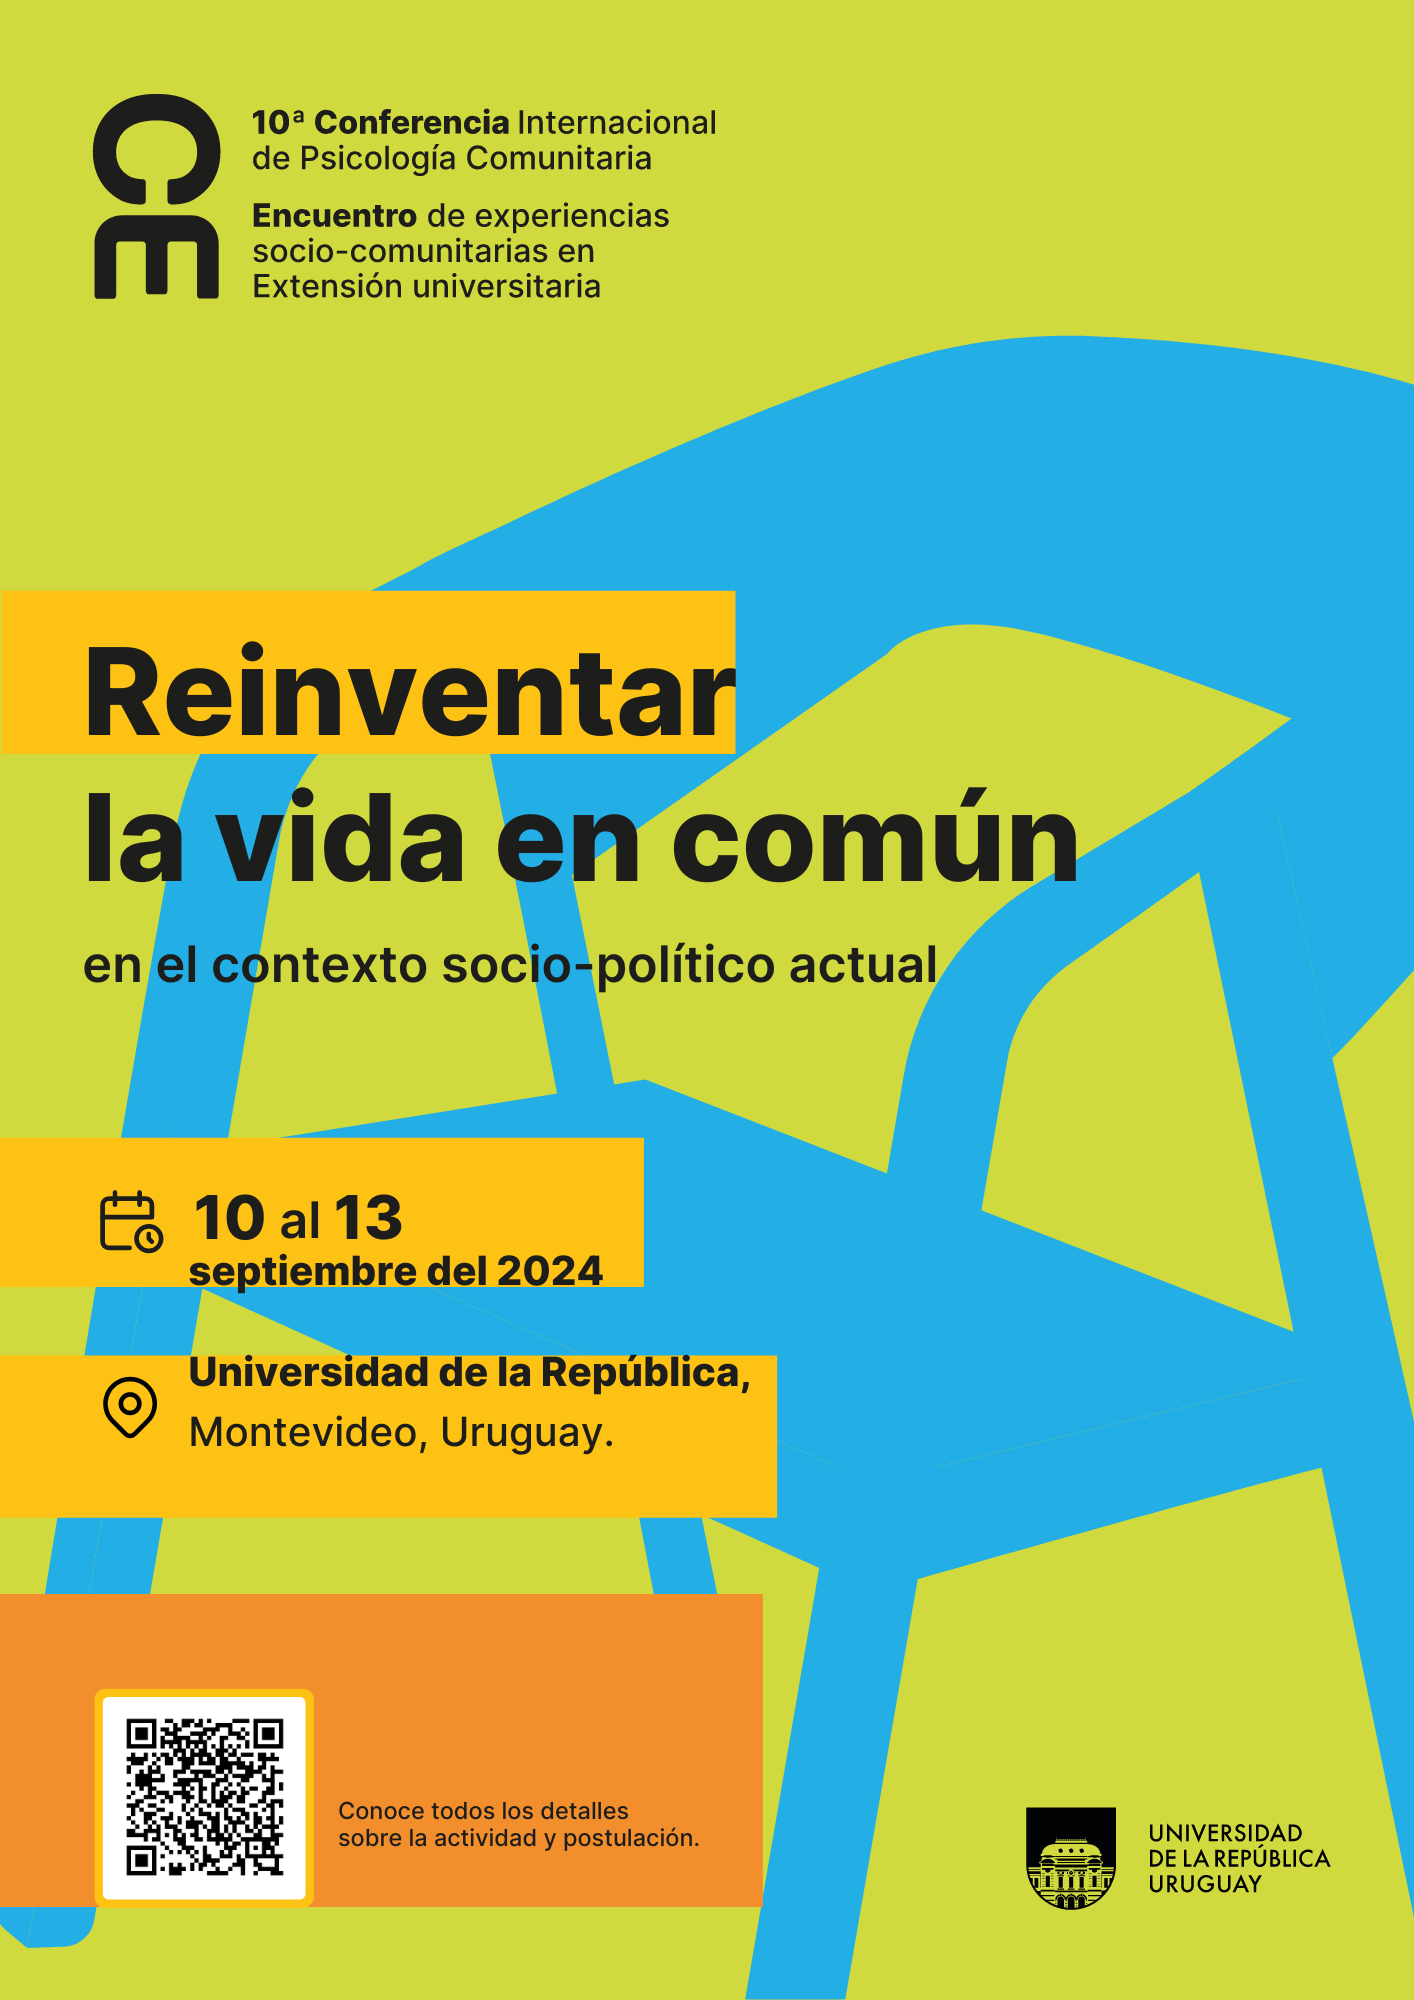 10ma. Conferencia Internacional de Psicología Comunitaria y Encuentro de Experiencias Socio-comunitarias en Extensión Universitaria